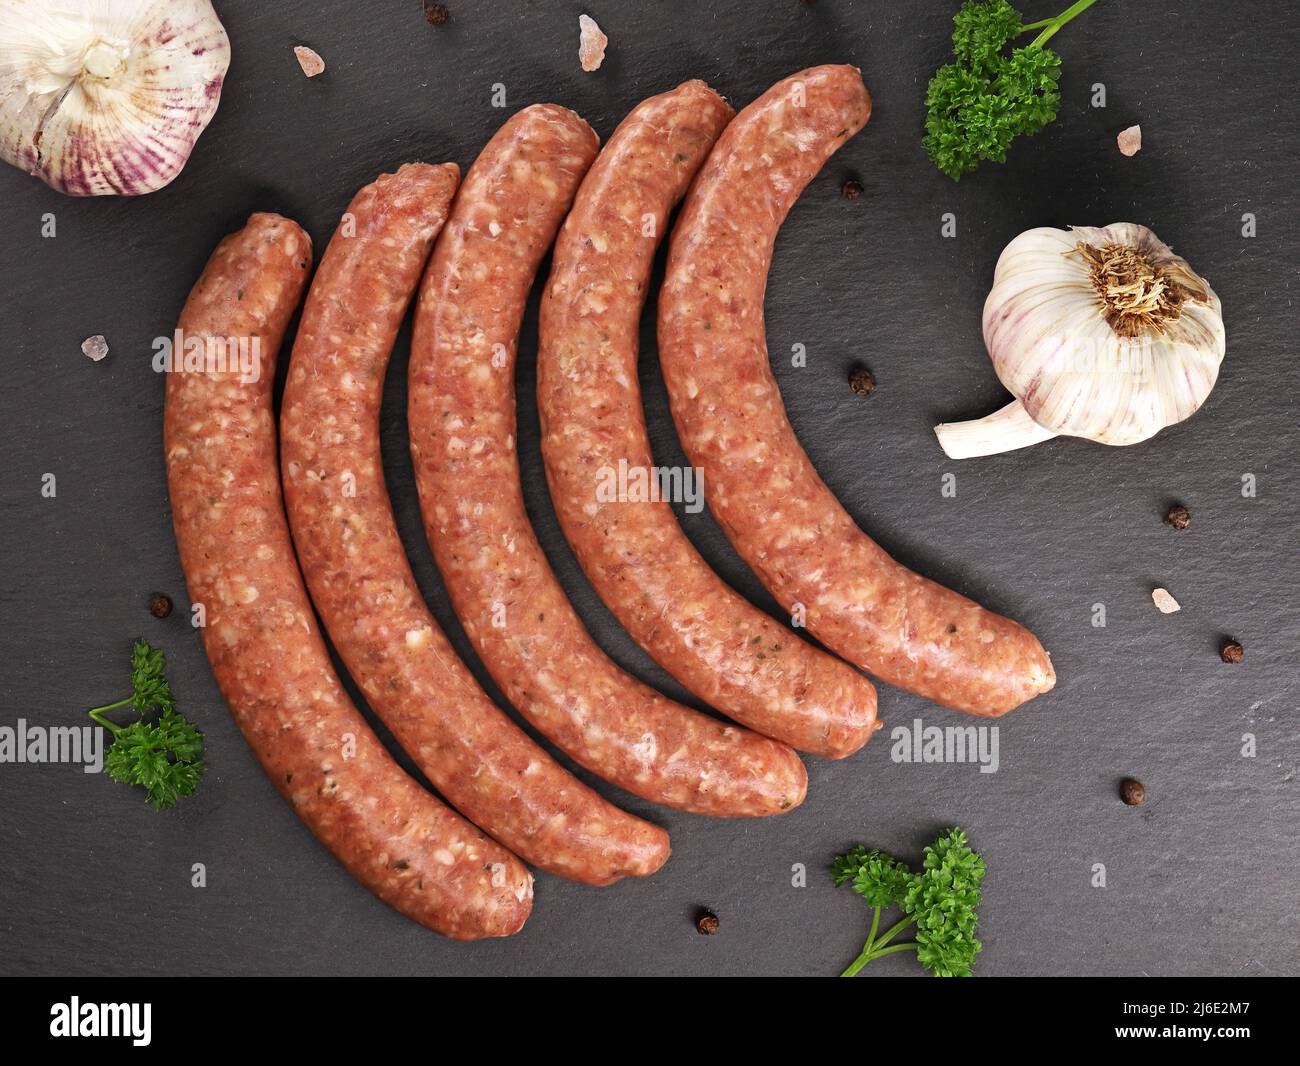 Salsicce di vitello crudo con prezzemolo, aglio e spezie in ardesia nera, vista dall'alto di deliziose salsicce rosse pronte per la cottura alla griglia Foto Stock